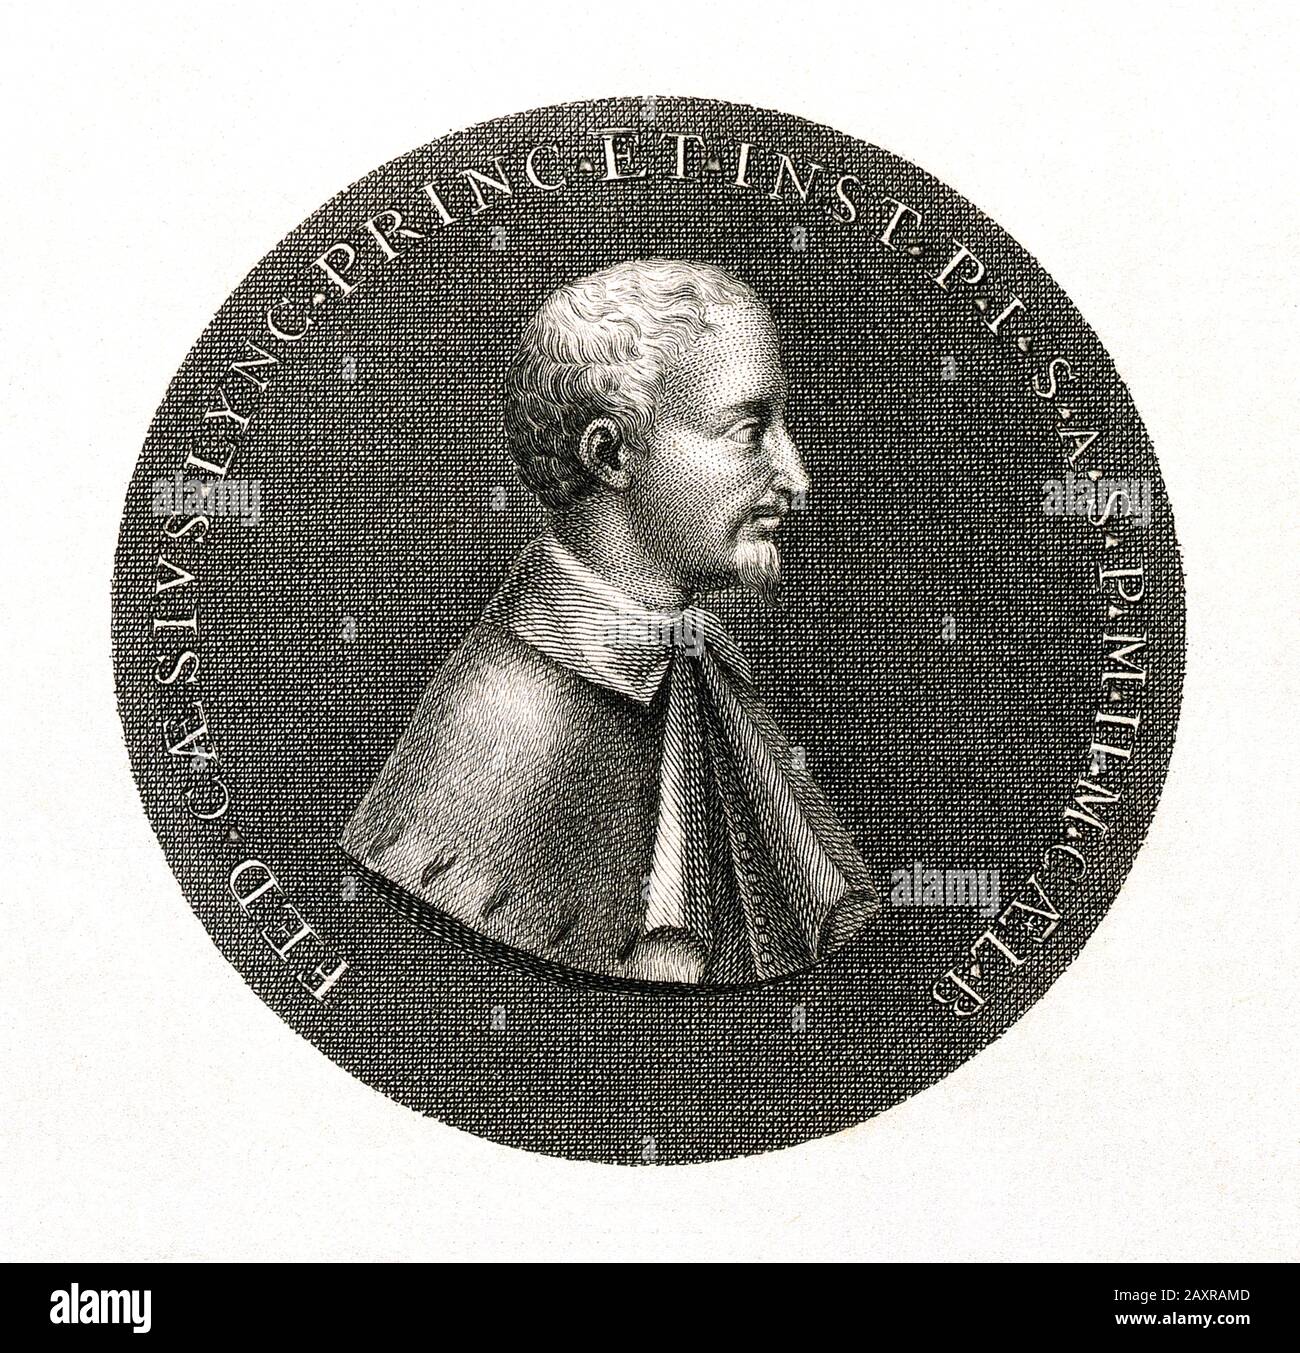 1630 ca , Roma, ITALY : Engraving of front-side of a medal dedicated to FEDERICO Angelo CESI Duca  di ACQUASPARTA ( 1585 - 1630 ), Principe di Sant'angelo e San Polo , marchese di Monticelli . Italian scientist , naturalist and founder of the Accademia dei Lincei ( Academy of the Lynxes ) in 1603 .- SCIENZA - SCIENCE - ITALIA - FEDERIGO CESI Duke of ACQUA SPARTA - profilo - profile - Nobiltà italiana - NOBILITY - portrait - ritratto  - barba - beard  - colletto - collar - NOBILI  - medaglione - incisione - engraving - HISTORY - FOTO STORICHE - medaglia - SCIENZIATO - MEDICO - MEDICINA - MEDICI Stock Photo